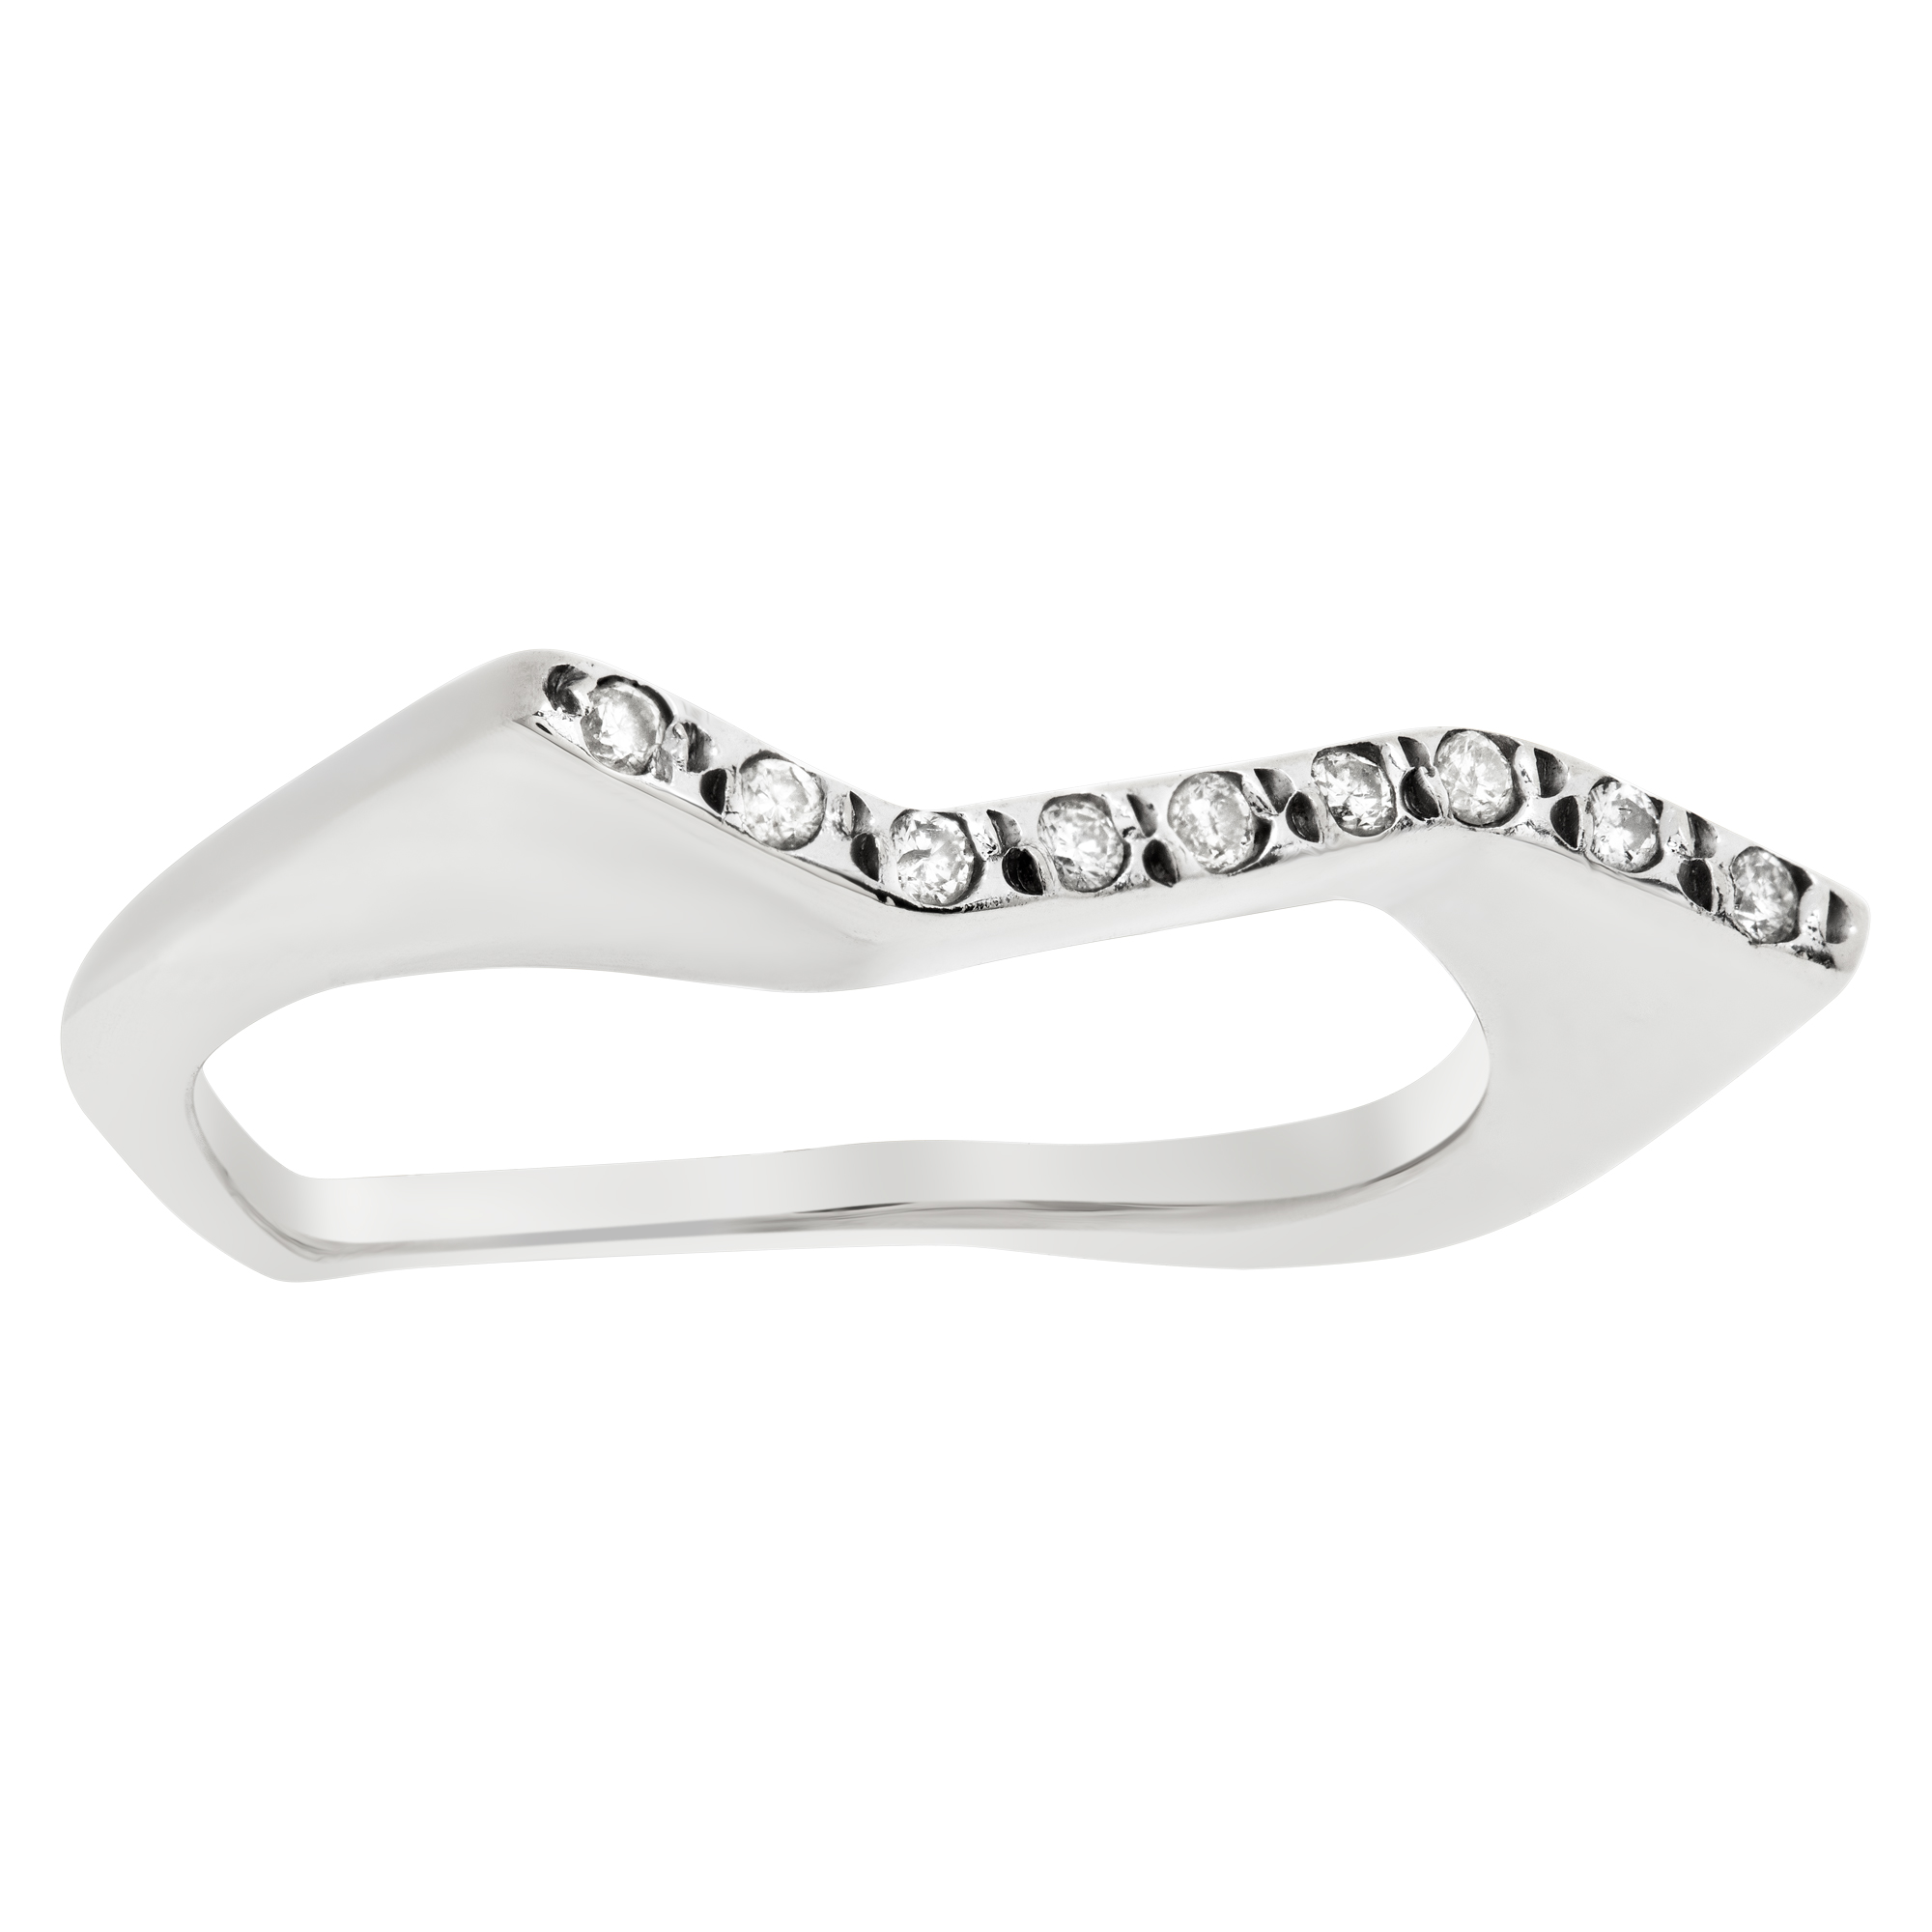 Zig-zag diamond line ring in 18k white gold, app. 0.10 carats. Size 8